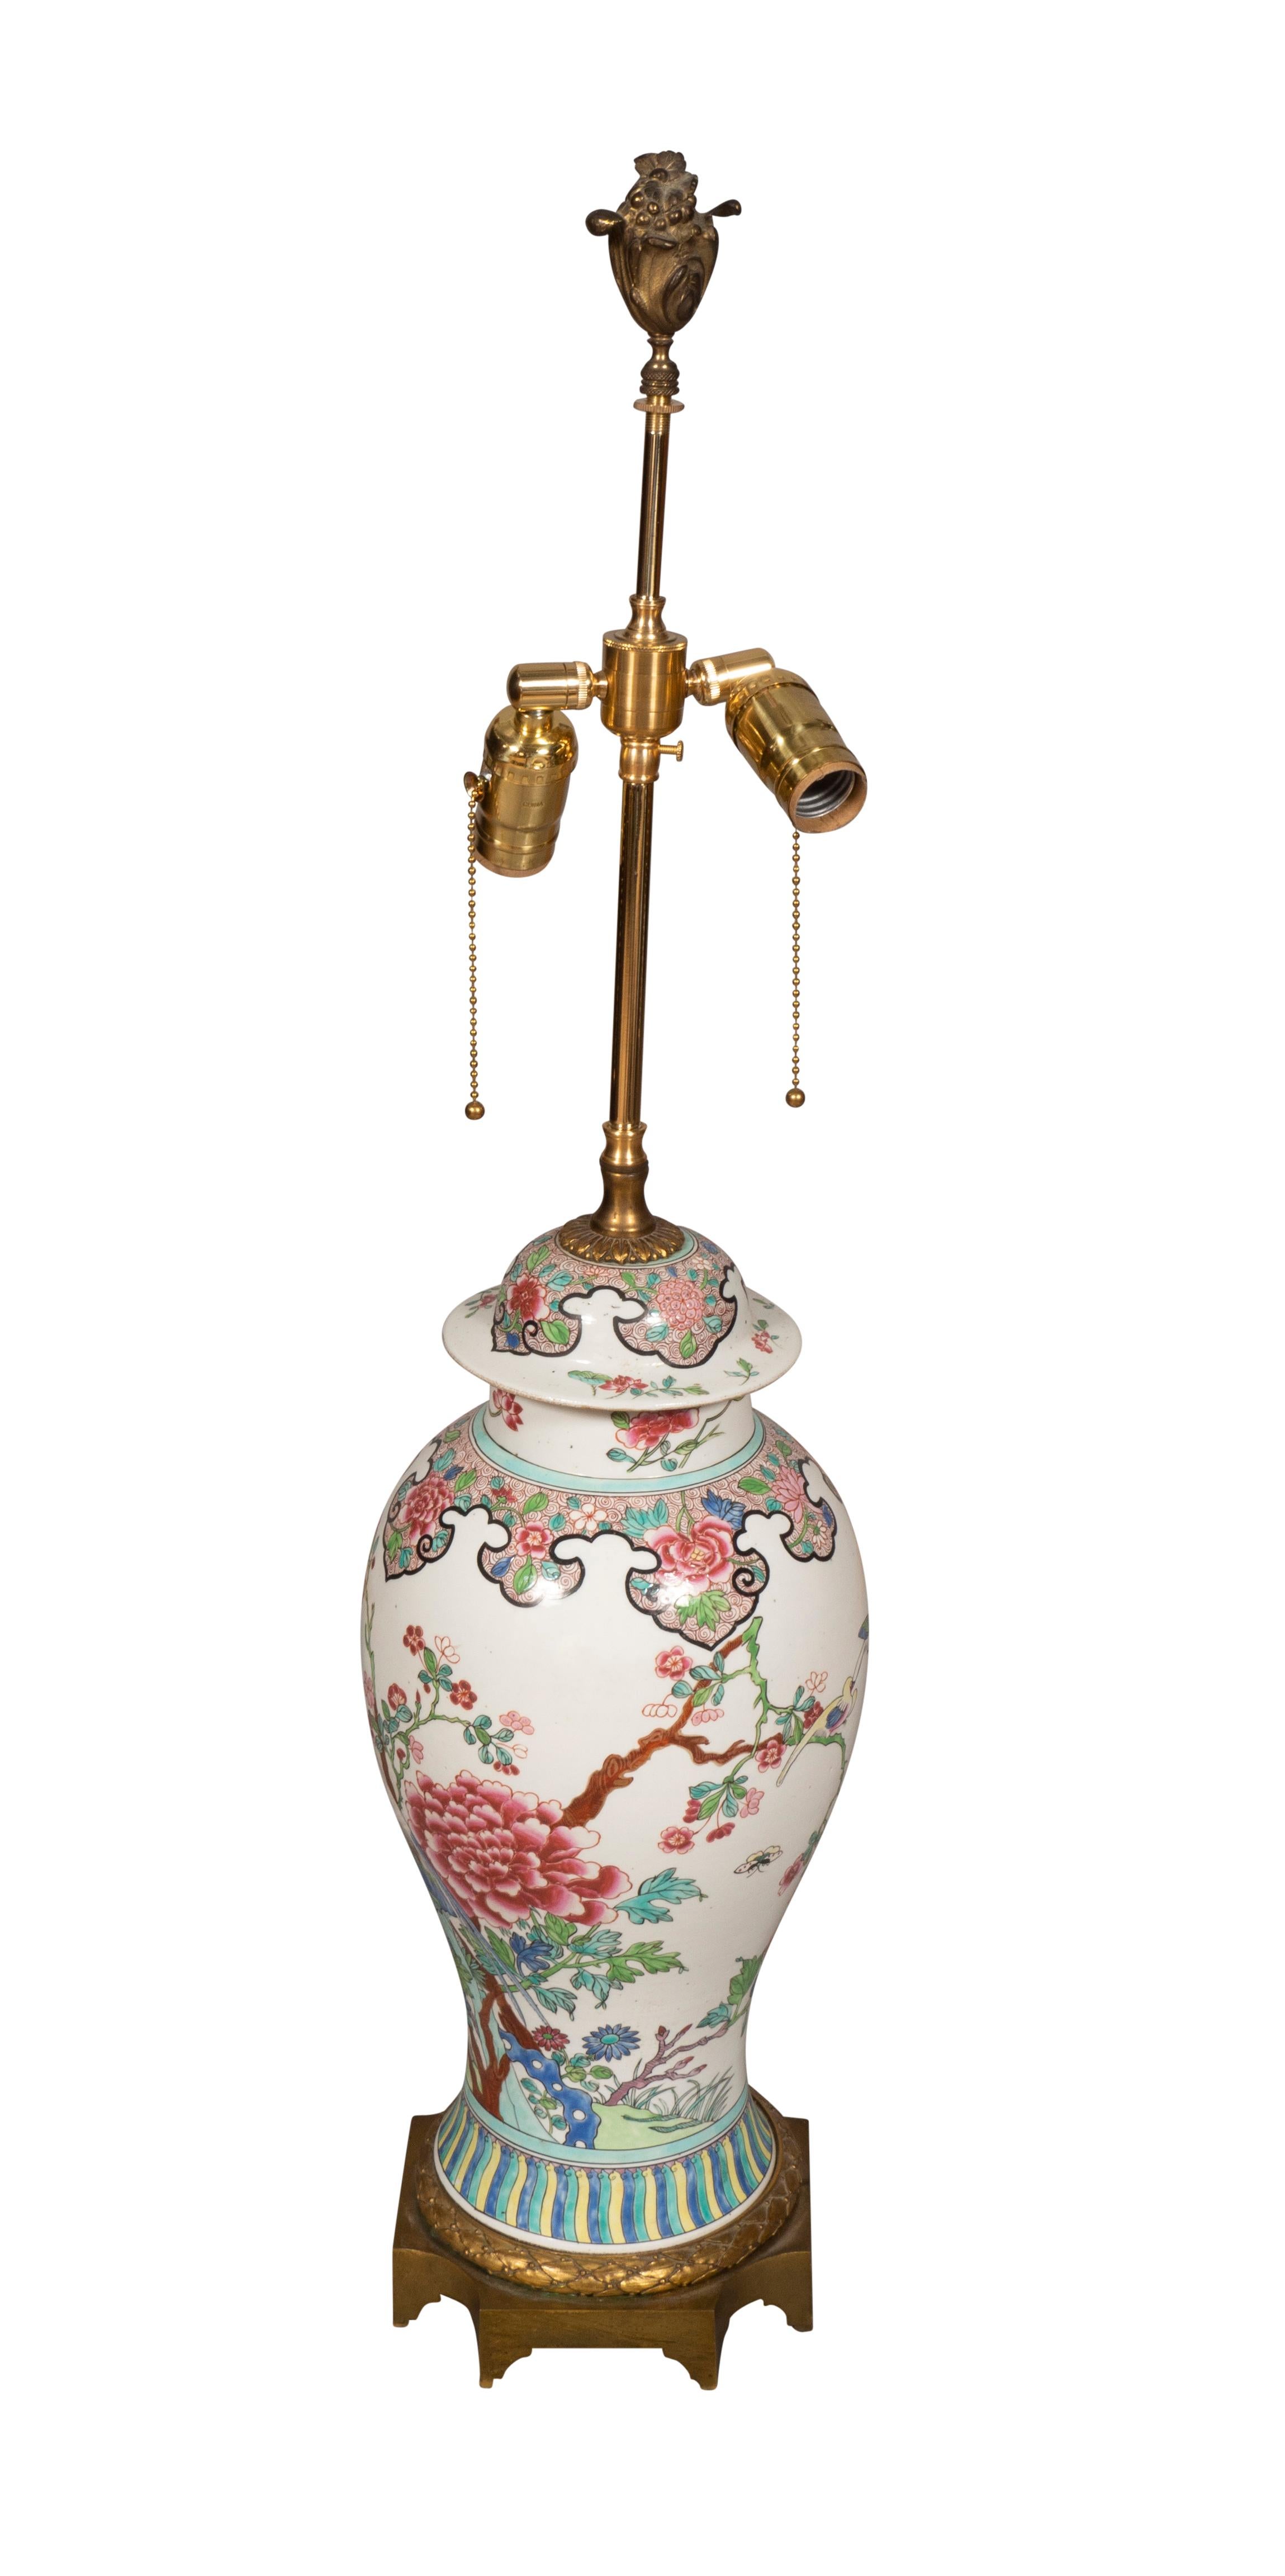 Balusterform, fein bemalt im chinesischen Stil. Sockel aus Bronze. Zwei Lichtsteckdosen.
Aus dem Nachlass von A.B. Dick. Bellevue Avenue, Newport. Von Vasen in Lampen umgewandelt.